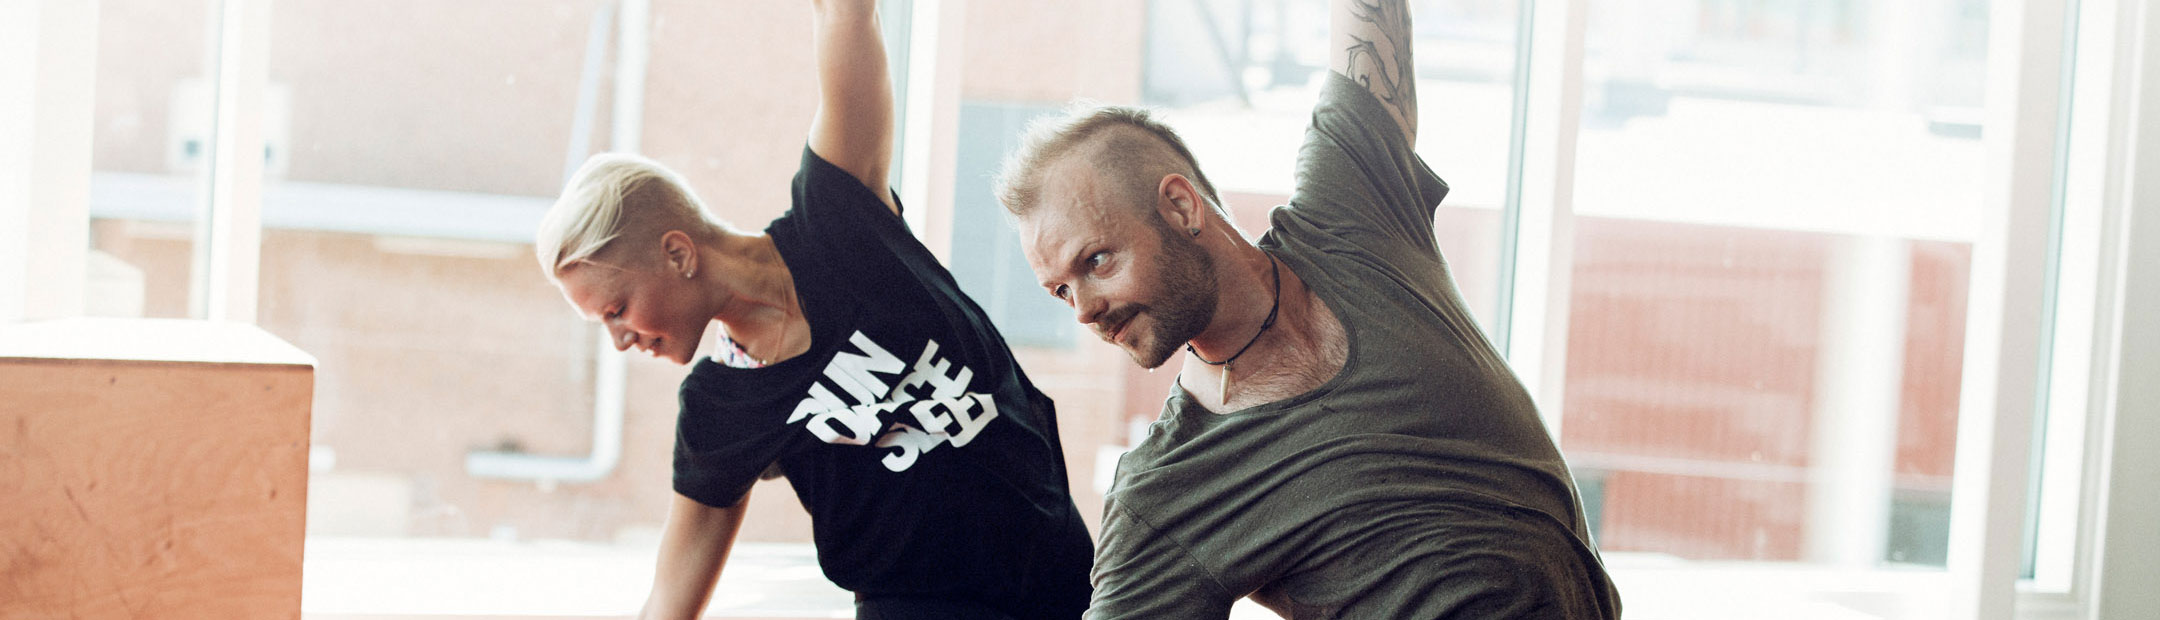 halvbild på två personer som lutar överkroppen åt vänster i en dansövning